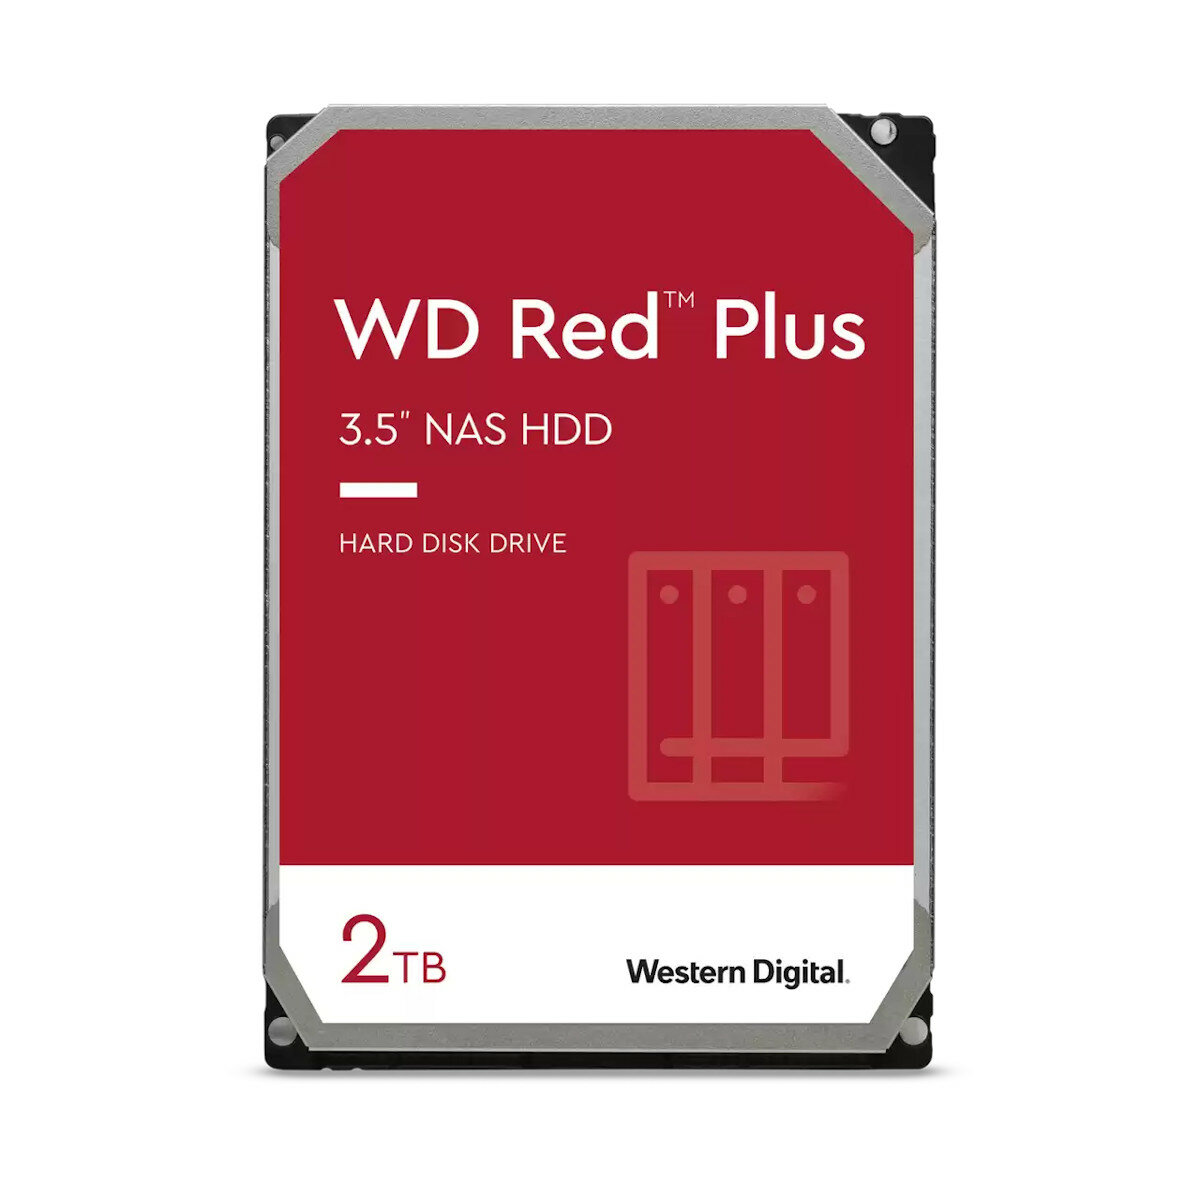 Dysk WD Red Plus 2TB SATA 6Gb/s 3.5'' zdjęcie dysku od przodu